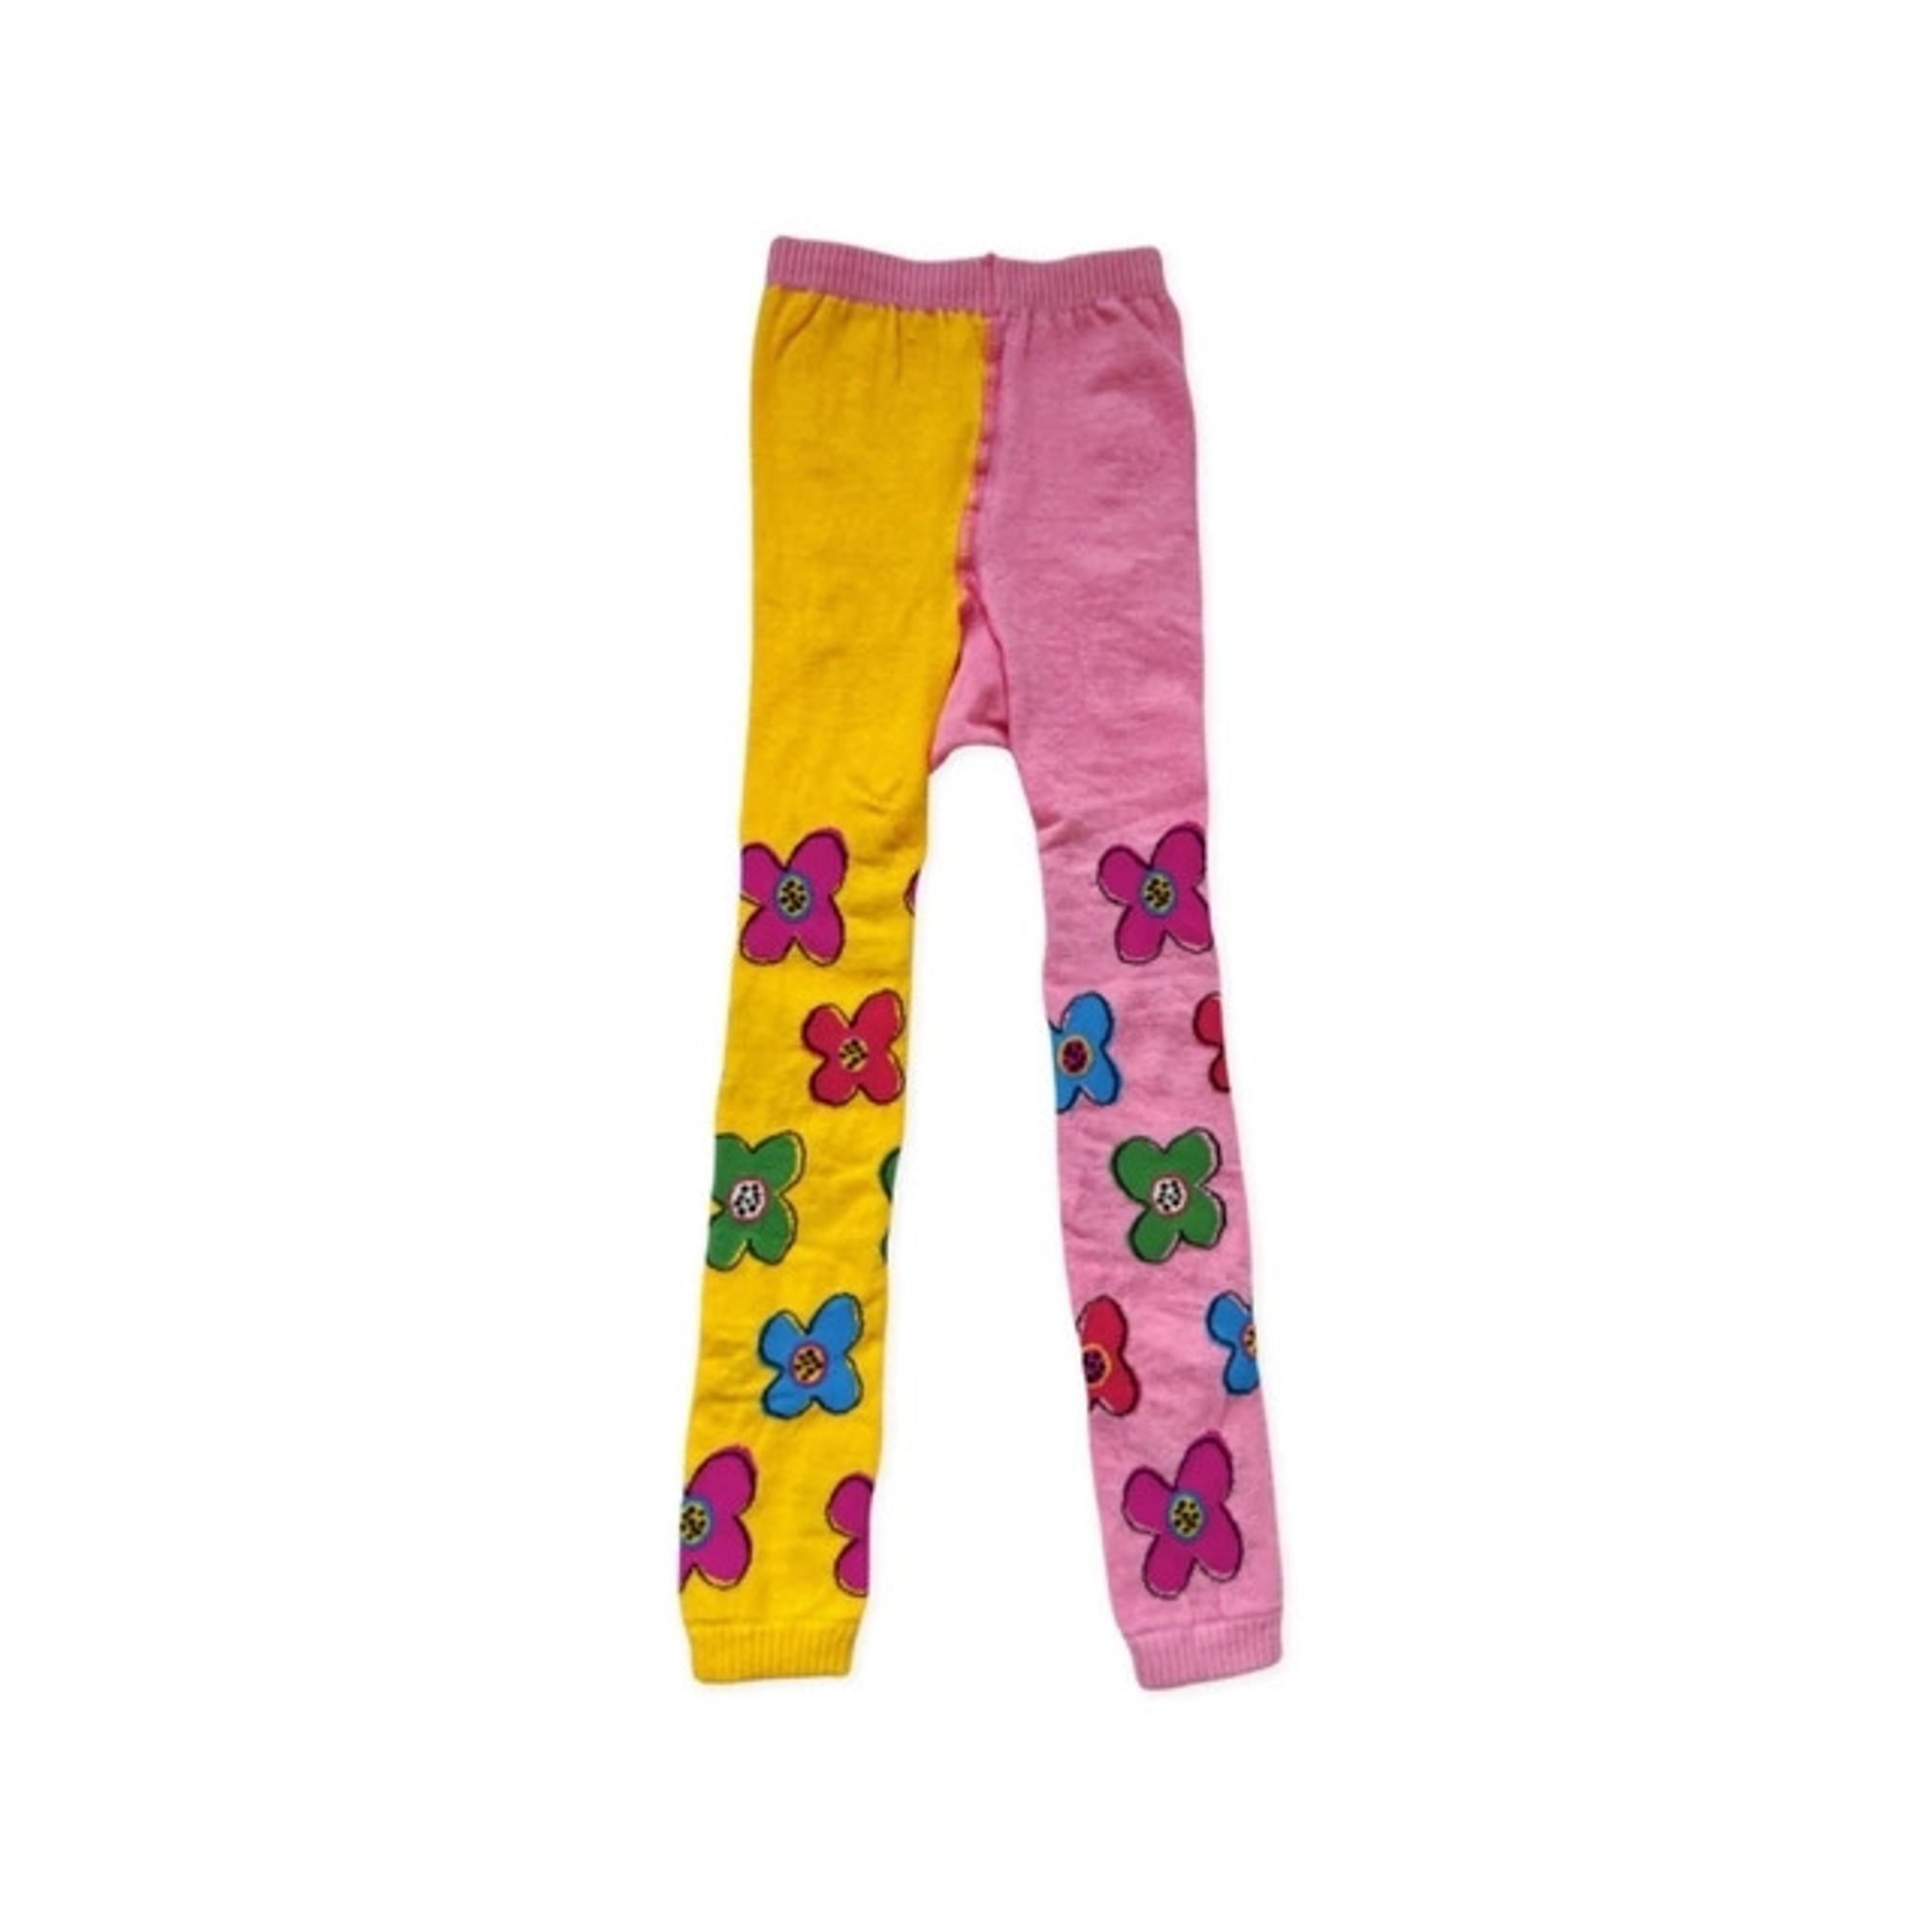 meia-legging-meninas-lola-flores-amarela-e-rosa-cantarola-1